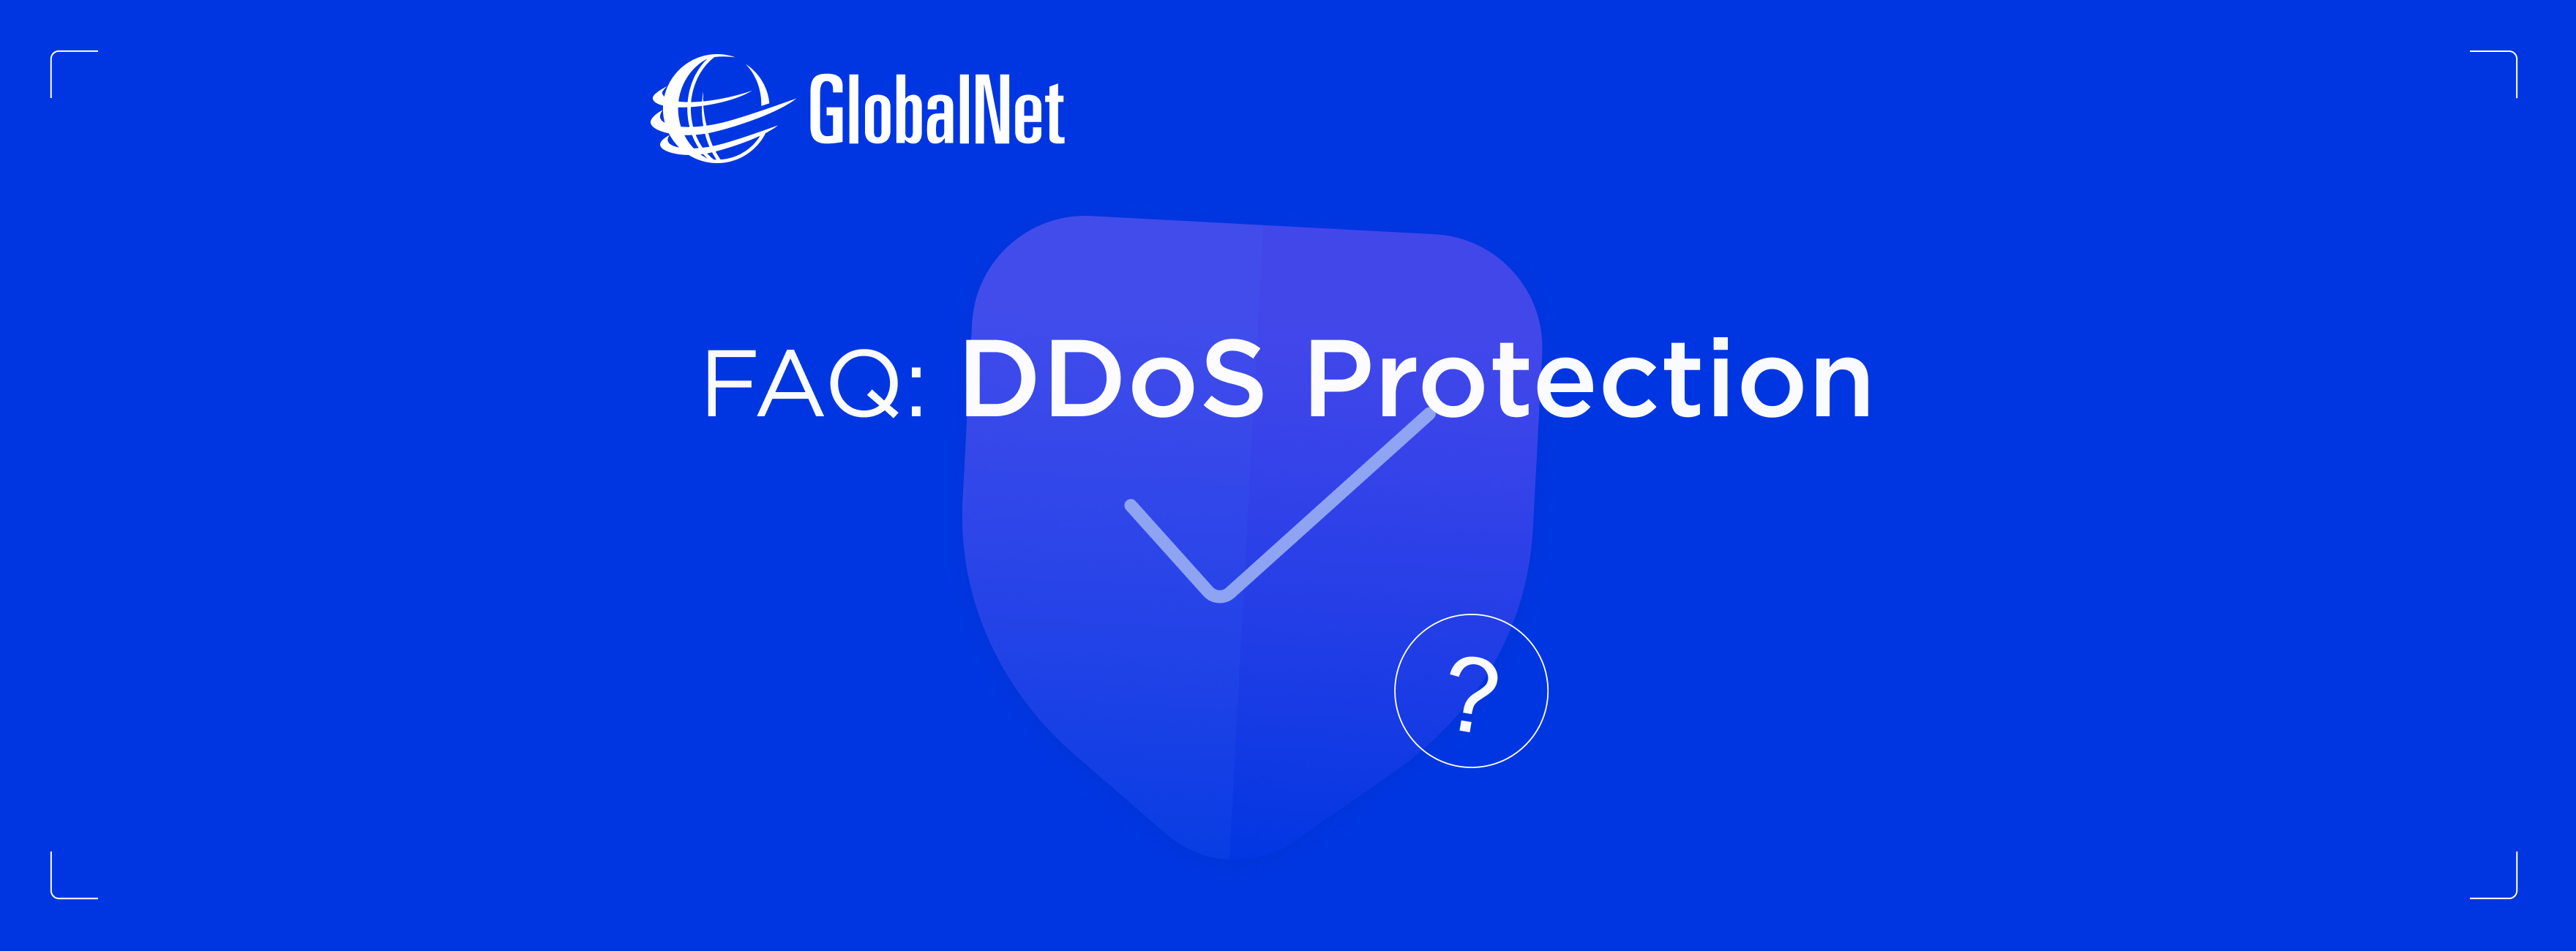 FAQ: DDoS Protection